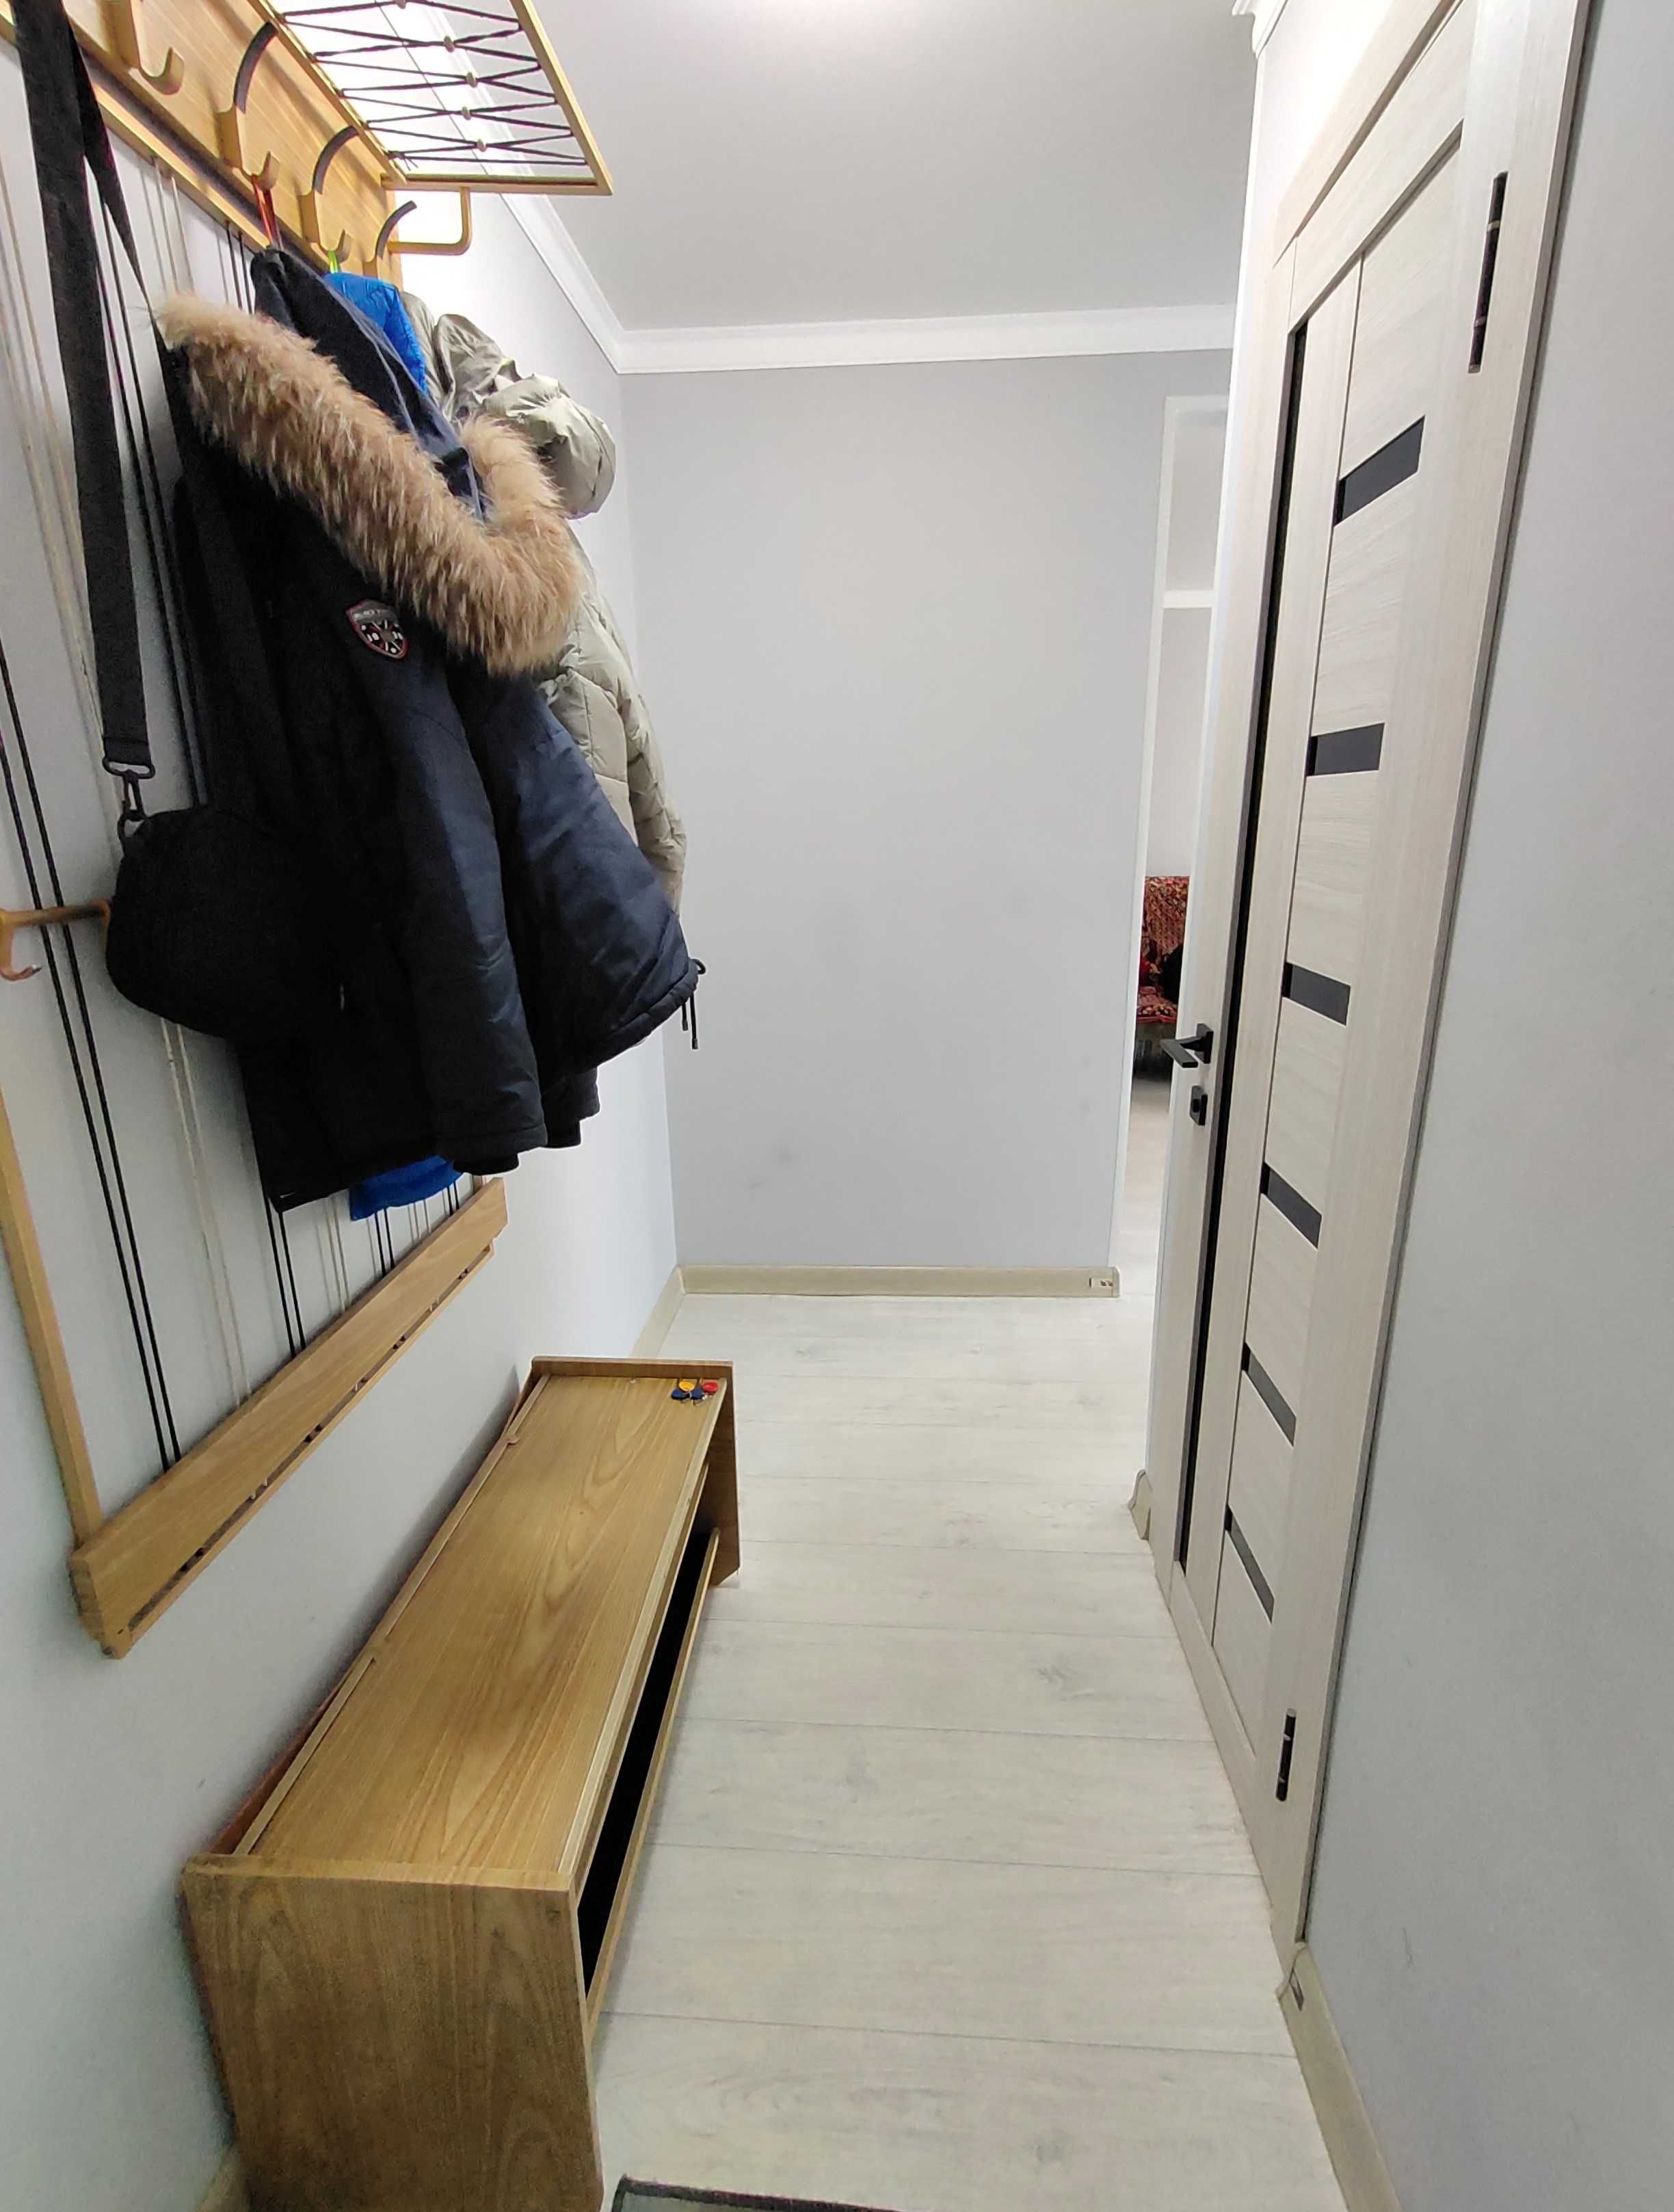 Продается 2-х комнатная квартира со свежим ремонтом по ул. Ержанова